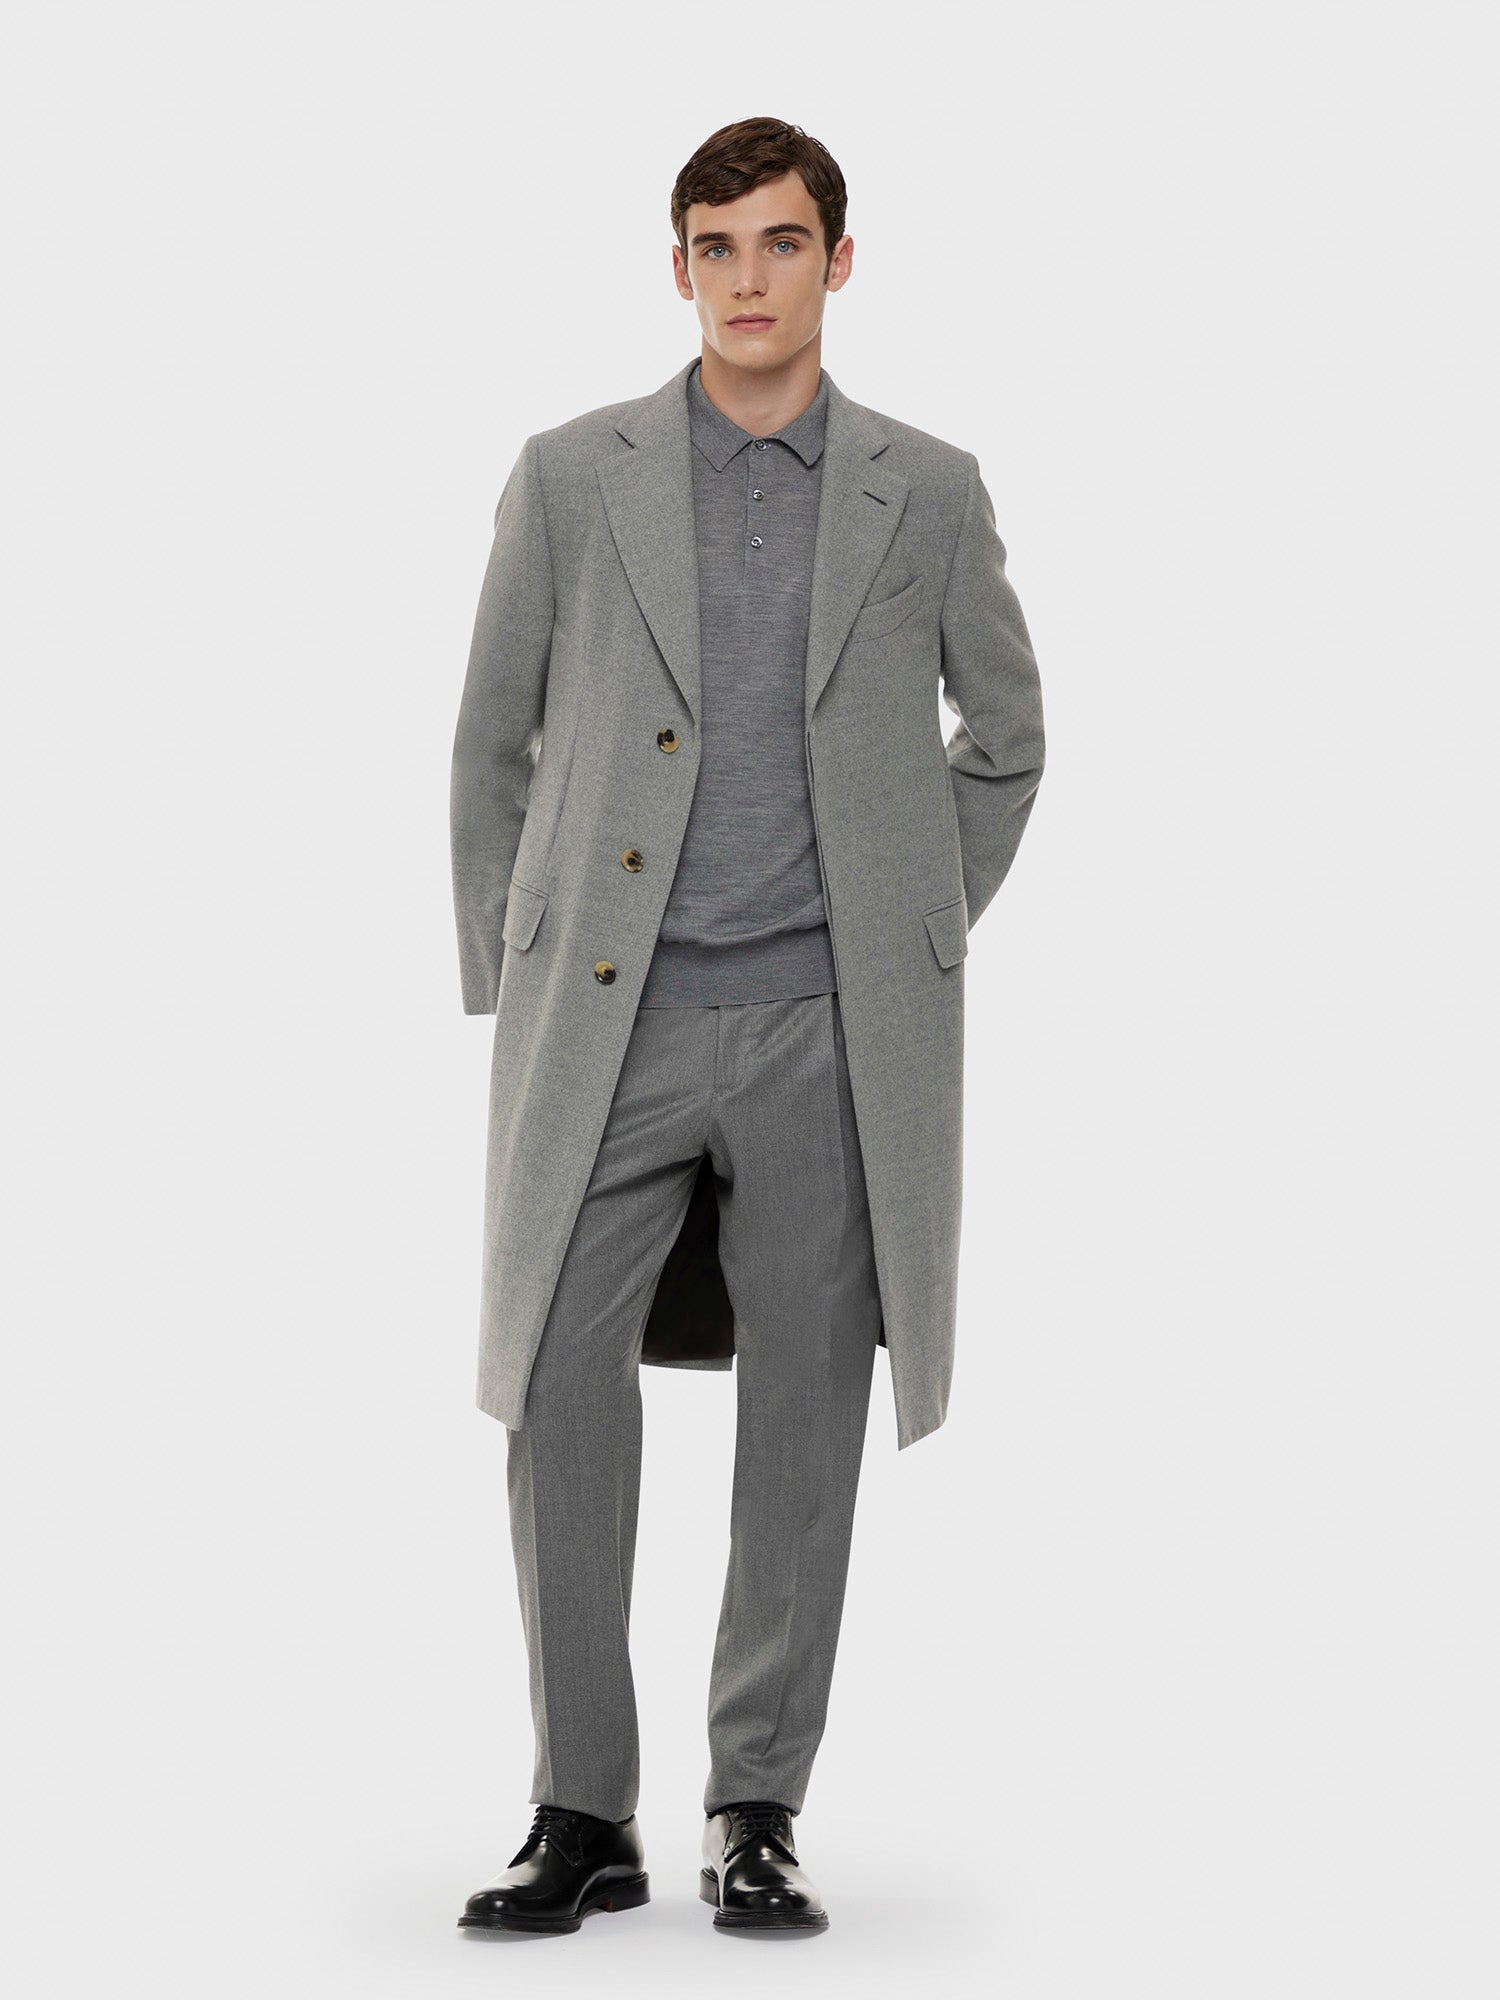 Caruso Menswear Abbigliamento Cappotto da Uomo norma in lana "Nuage" 180's grigio total look